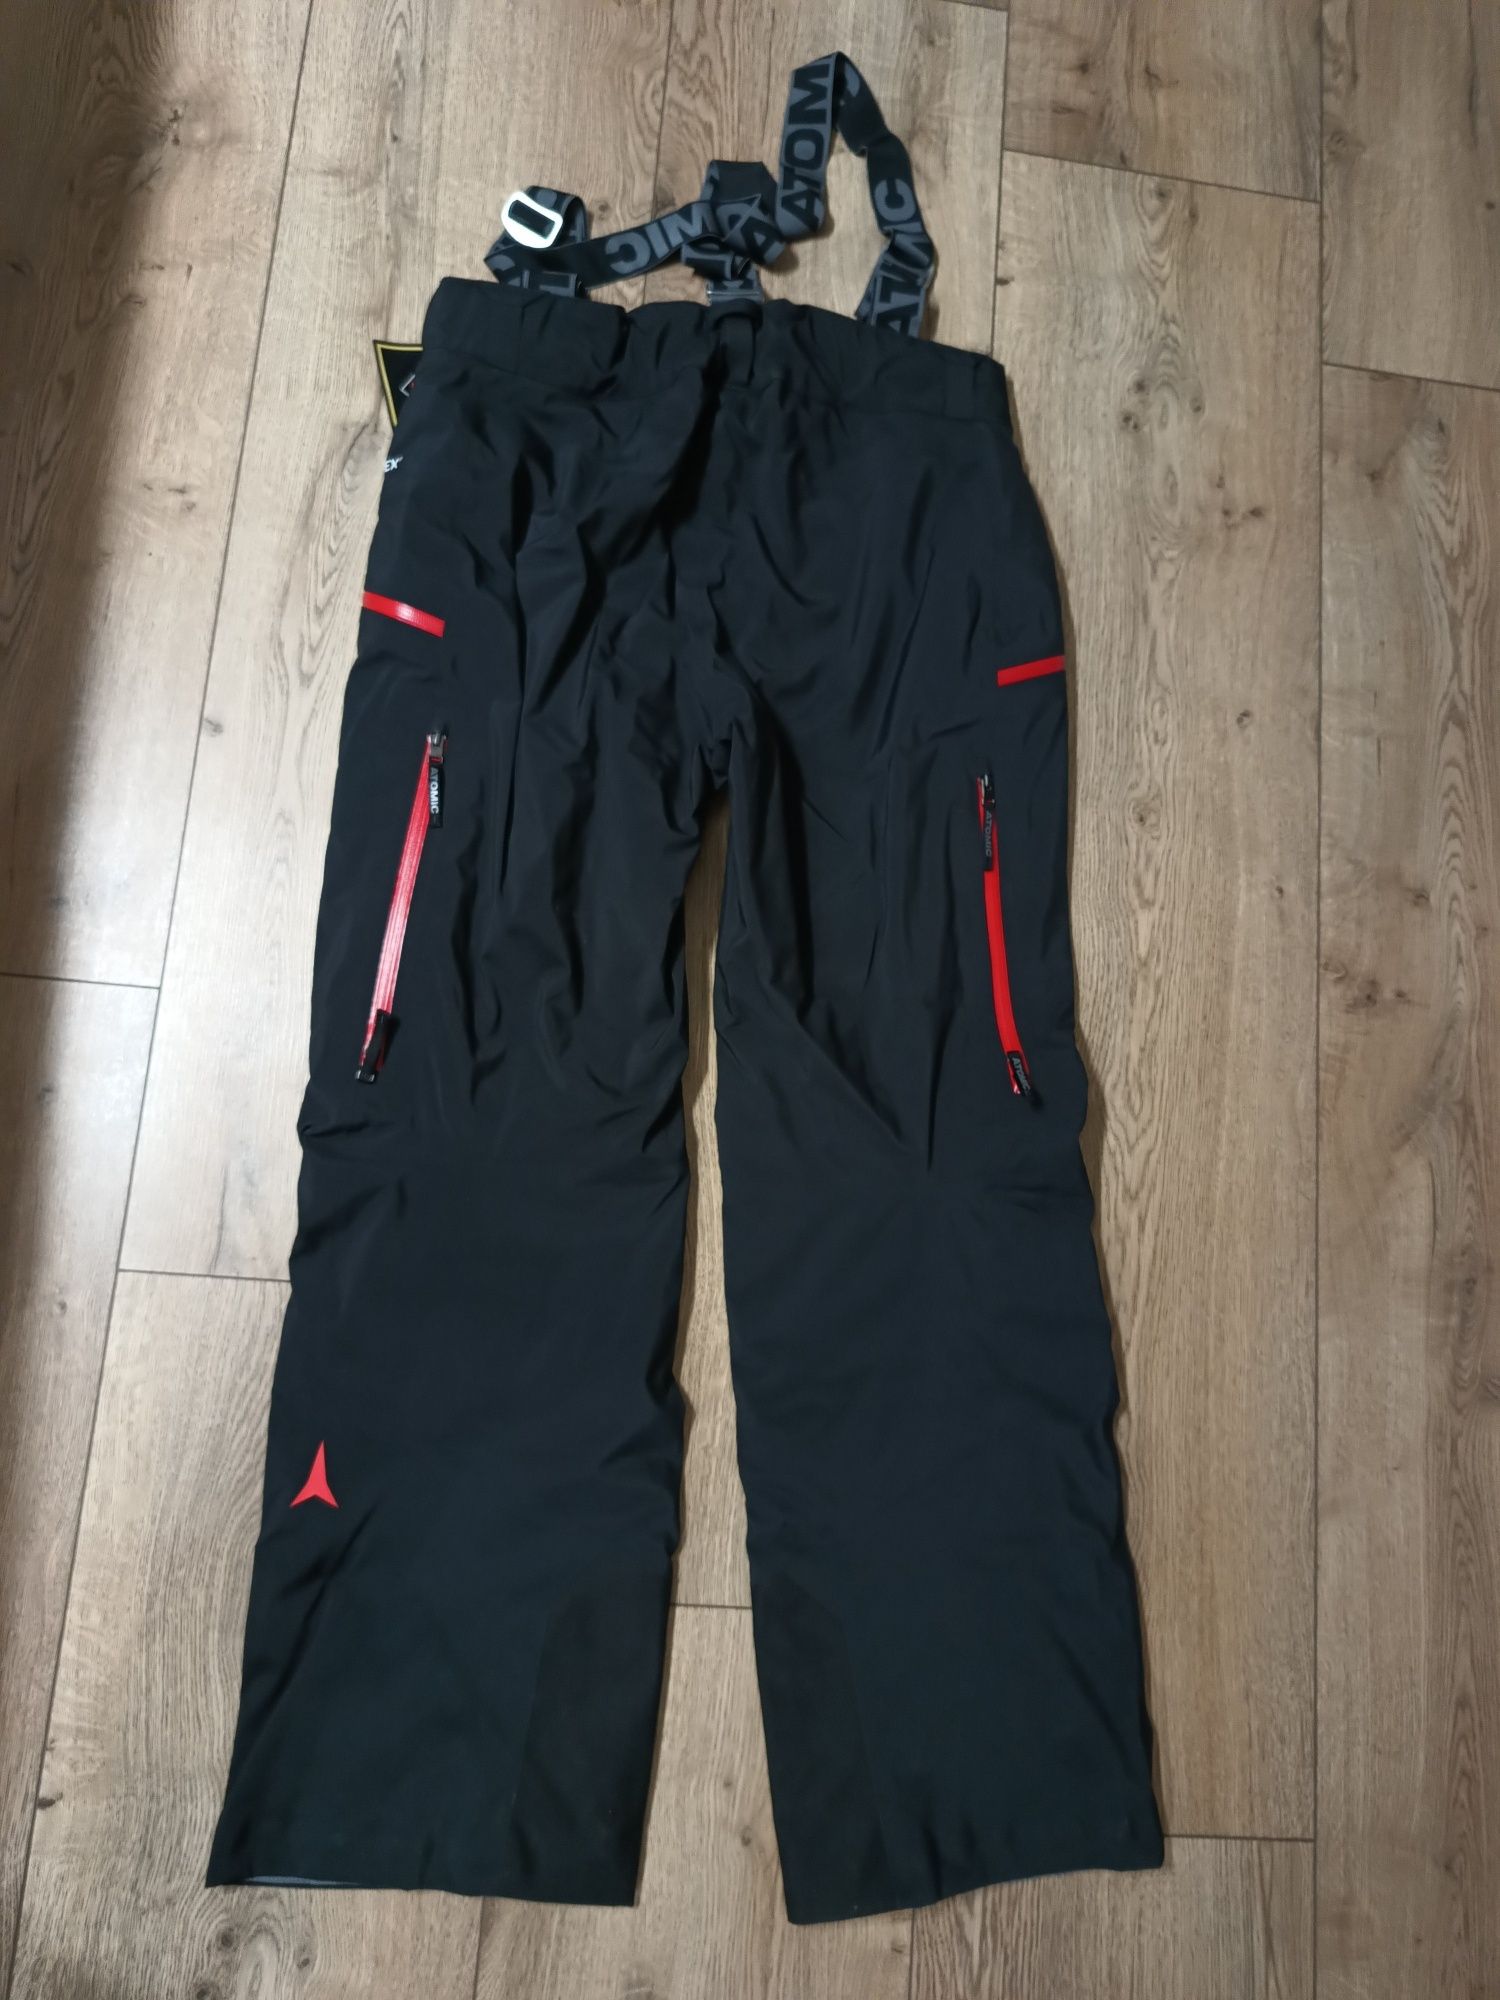 Spodnie narciarskie ATOMIC Redster GORE-TEX Pants NOWE rozm. XL